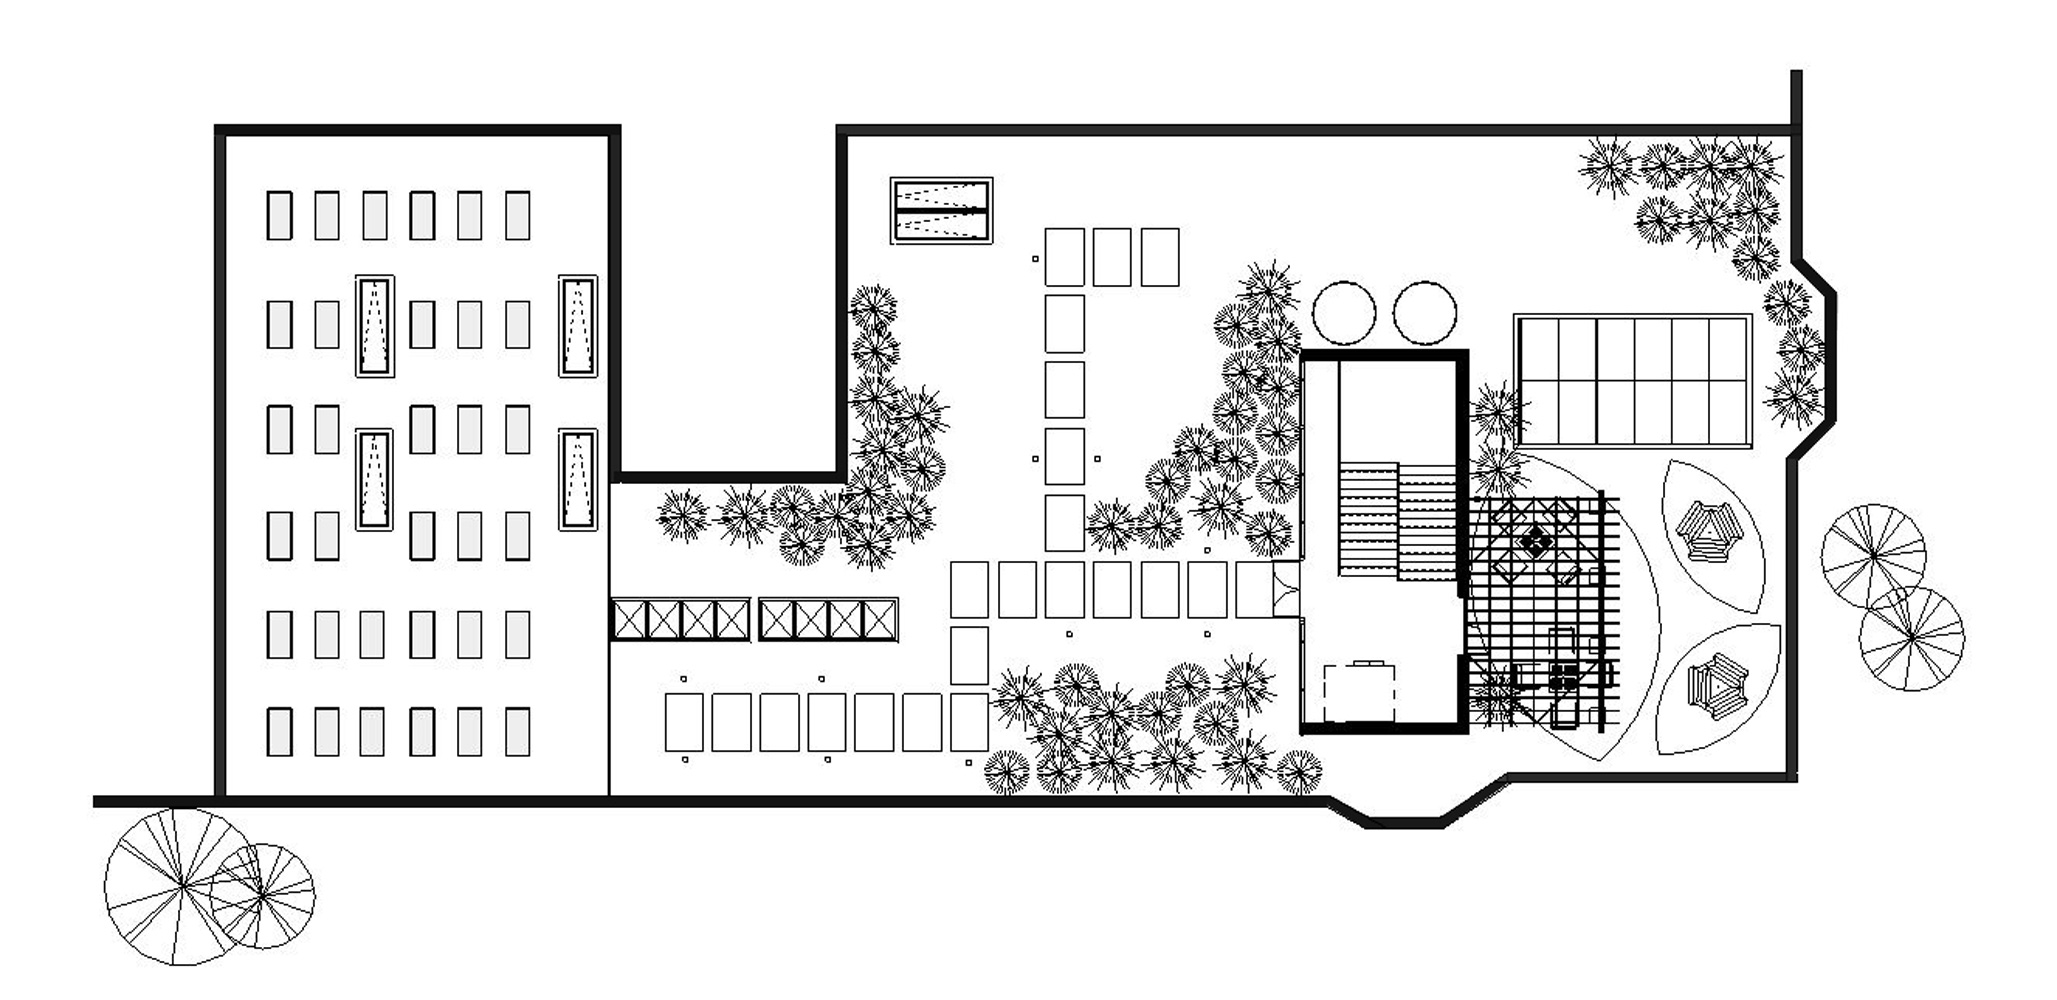 Floor plan for open office space